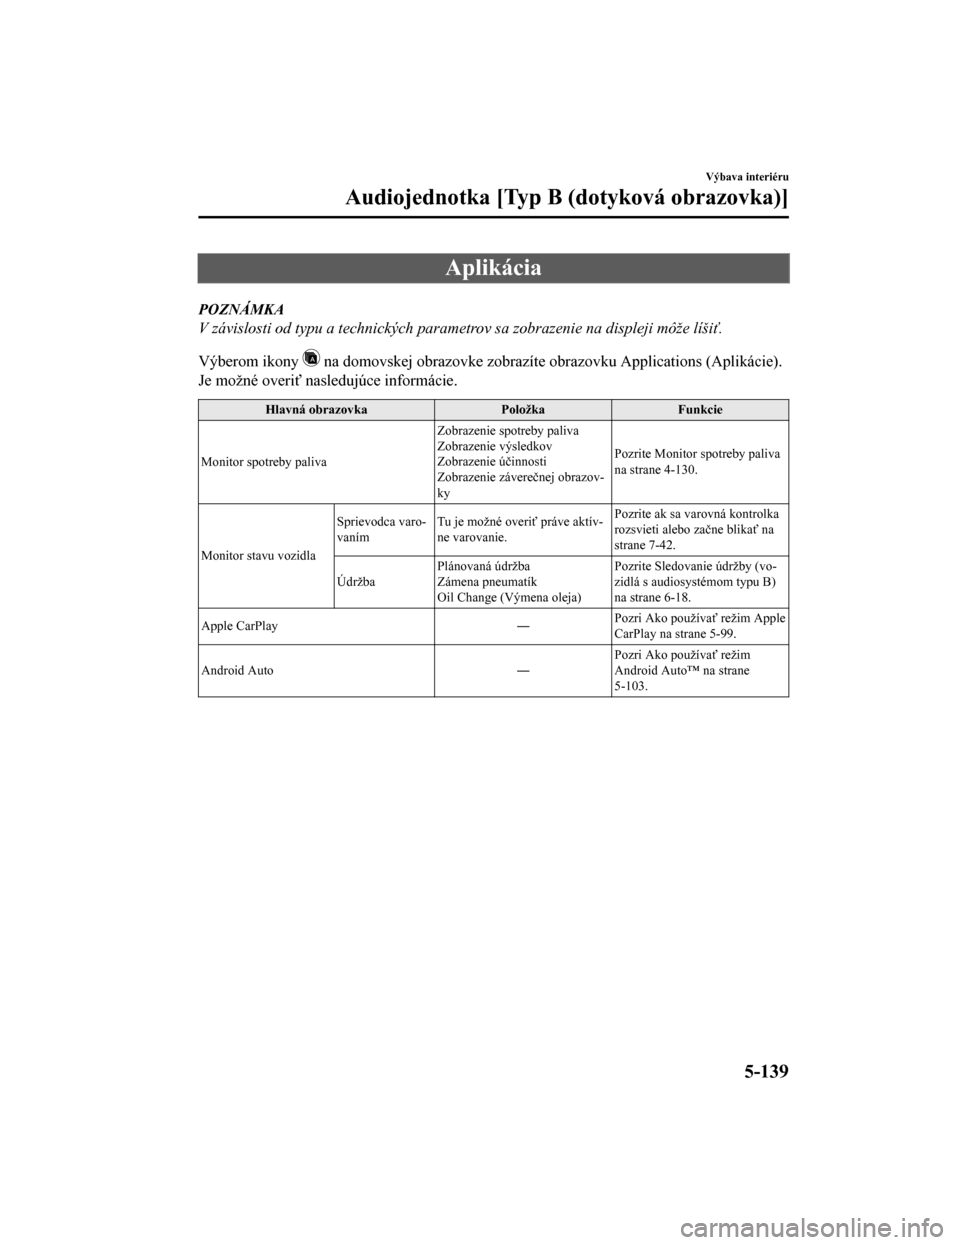 MAZDA MODEL CX-5 2019  Užívateľská príručka (in Slovak) Aplikácia
POZNÁMKA
V závislosti od typu a technických parametrov sa zobrazenie na displeji môže líšiť.
Výberom ikony 
 na domovskej obrazovke zobrazíte obrazovku Applications (Aplik ácie).